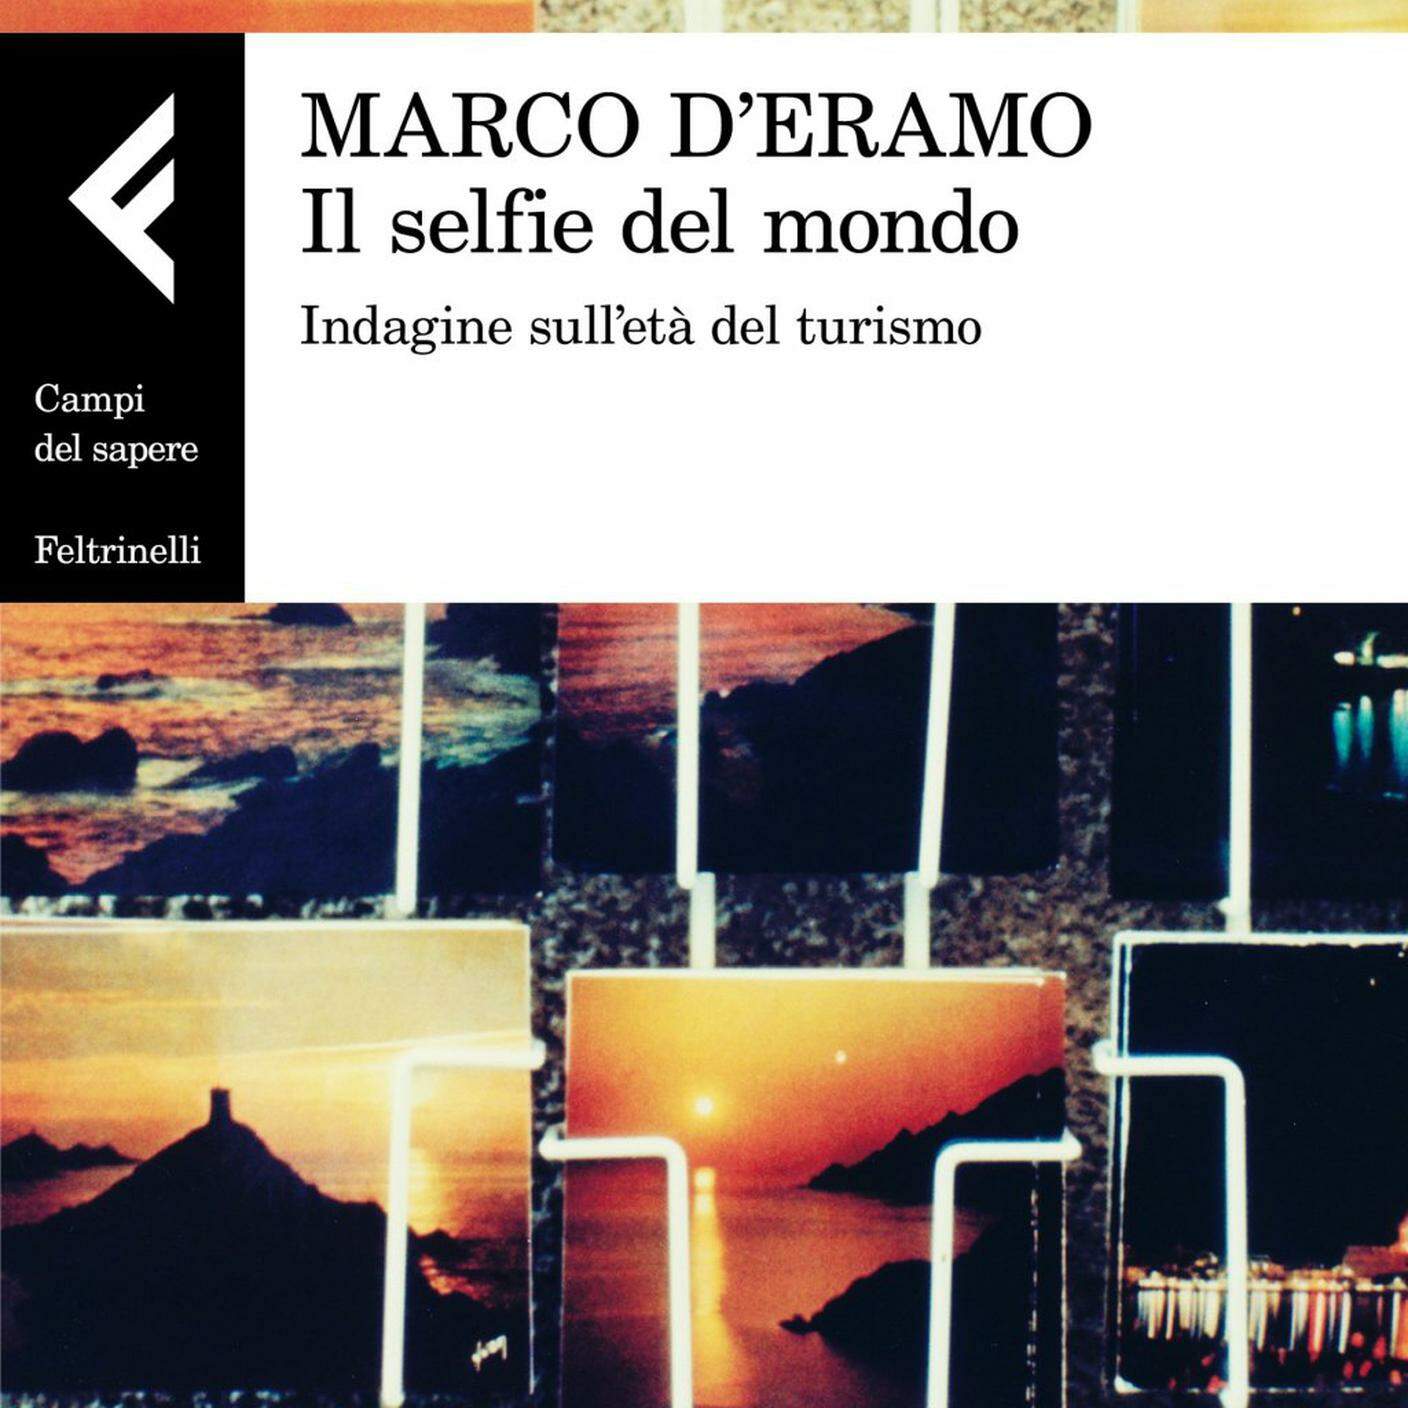 Marco D’Eramo, "Il Selfie del Mondo", Feltrinelli (dettaglio copertina)